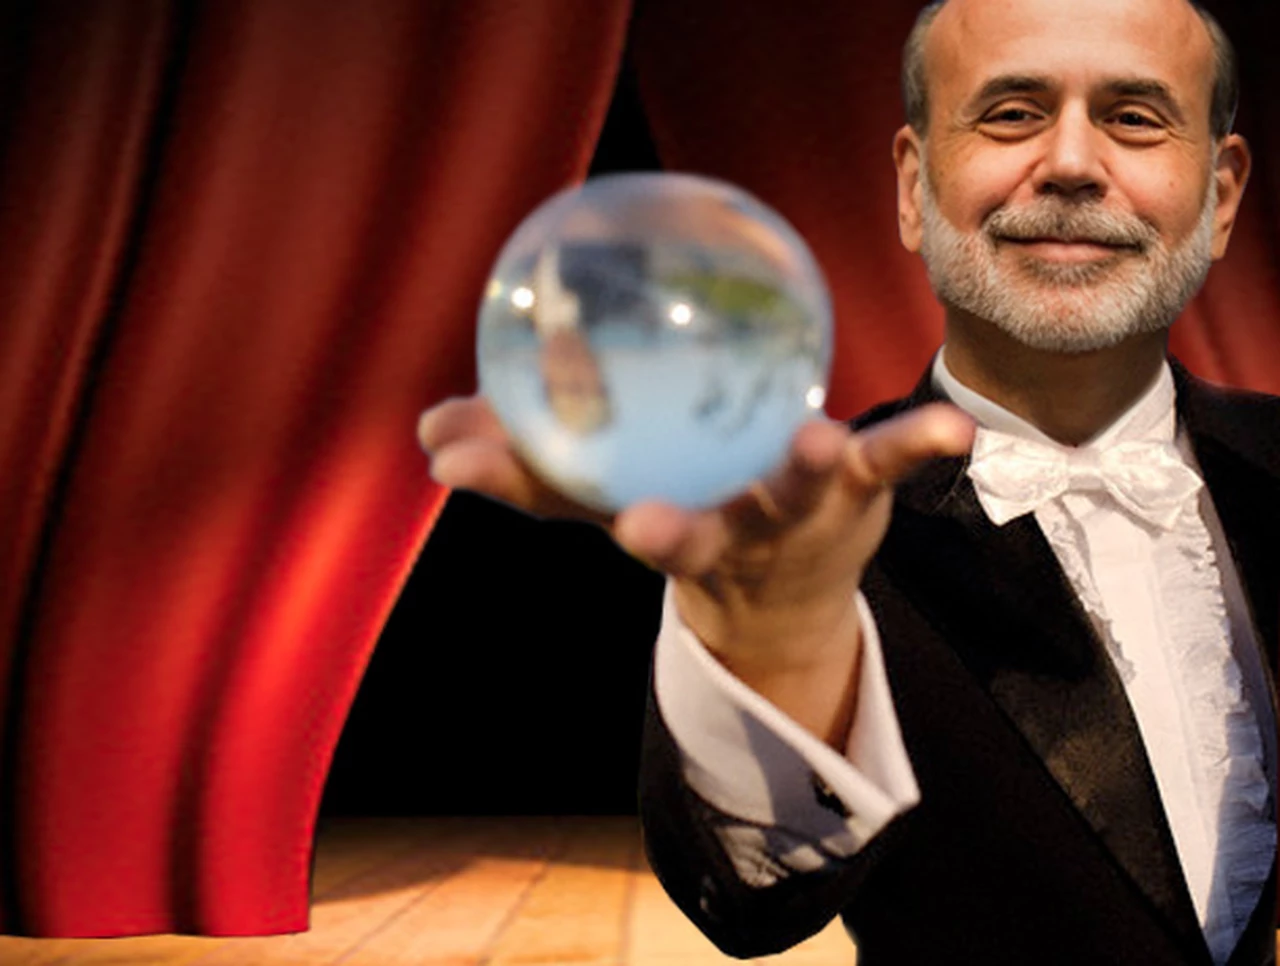 No todo es lo que parece: Bernanke, el "padre" de los mercados, tiene su casa hipotecada